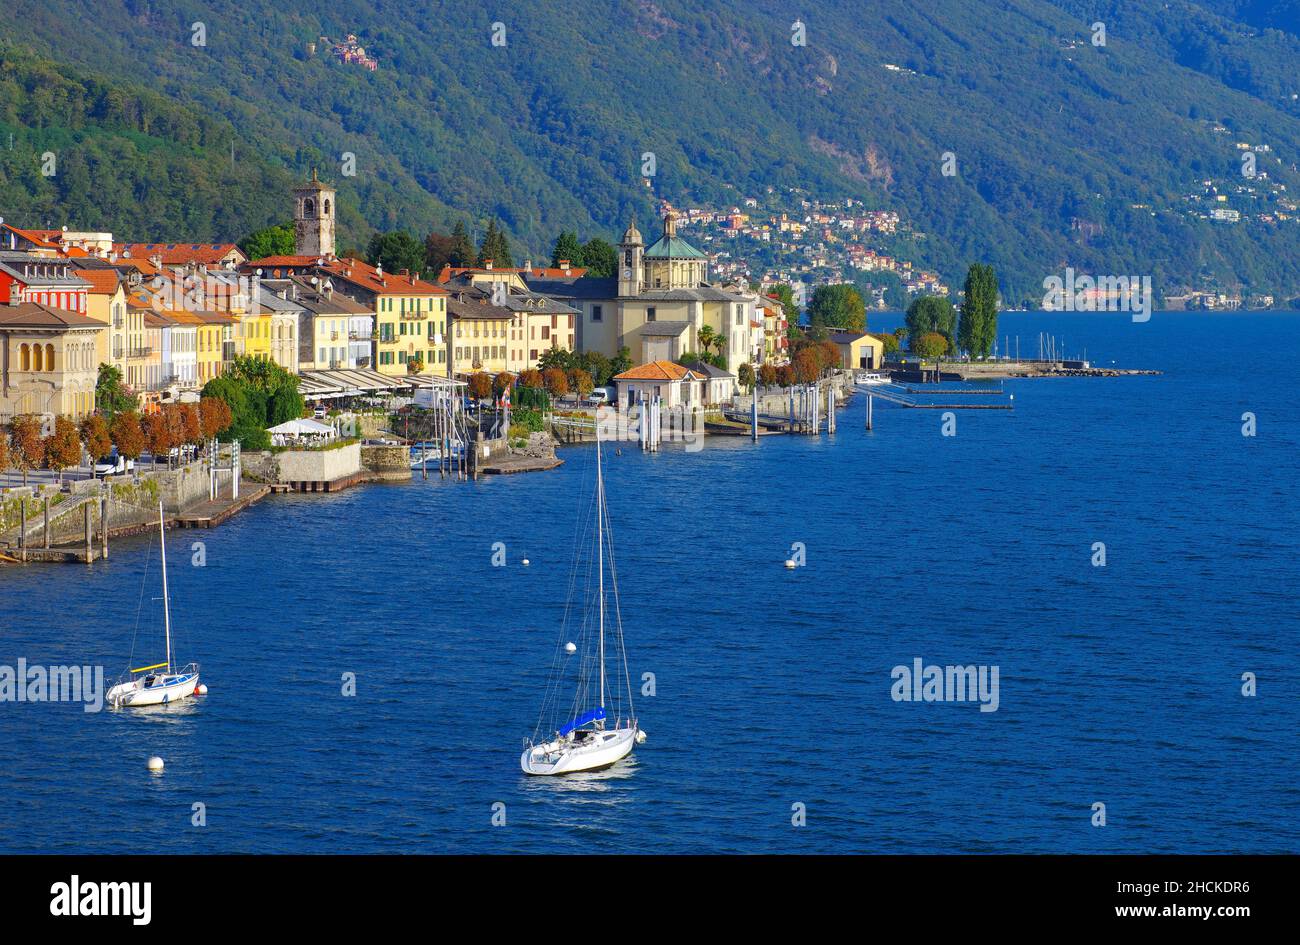 Lago Maggiore in northern Italy Stock Photo